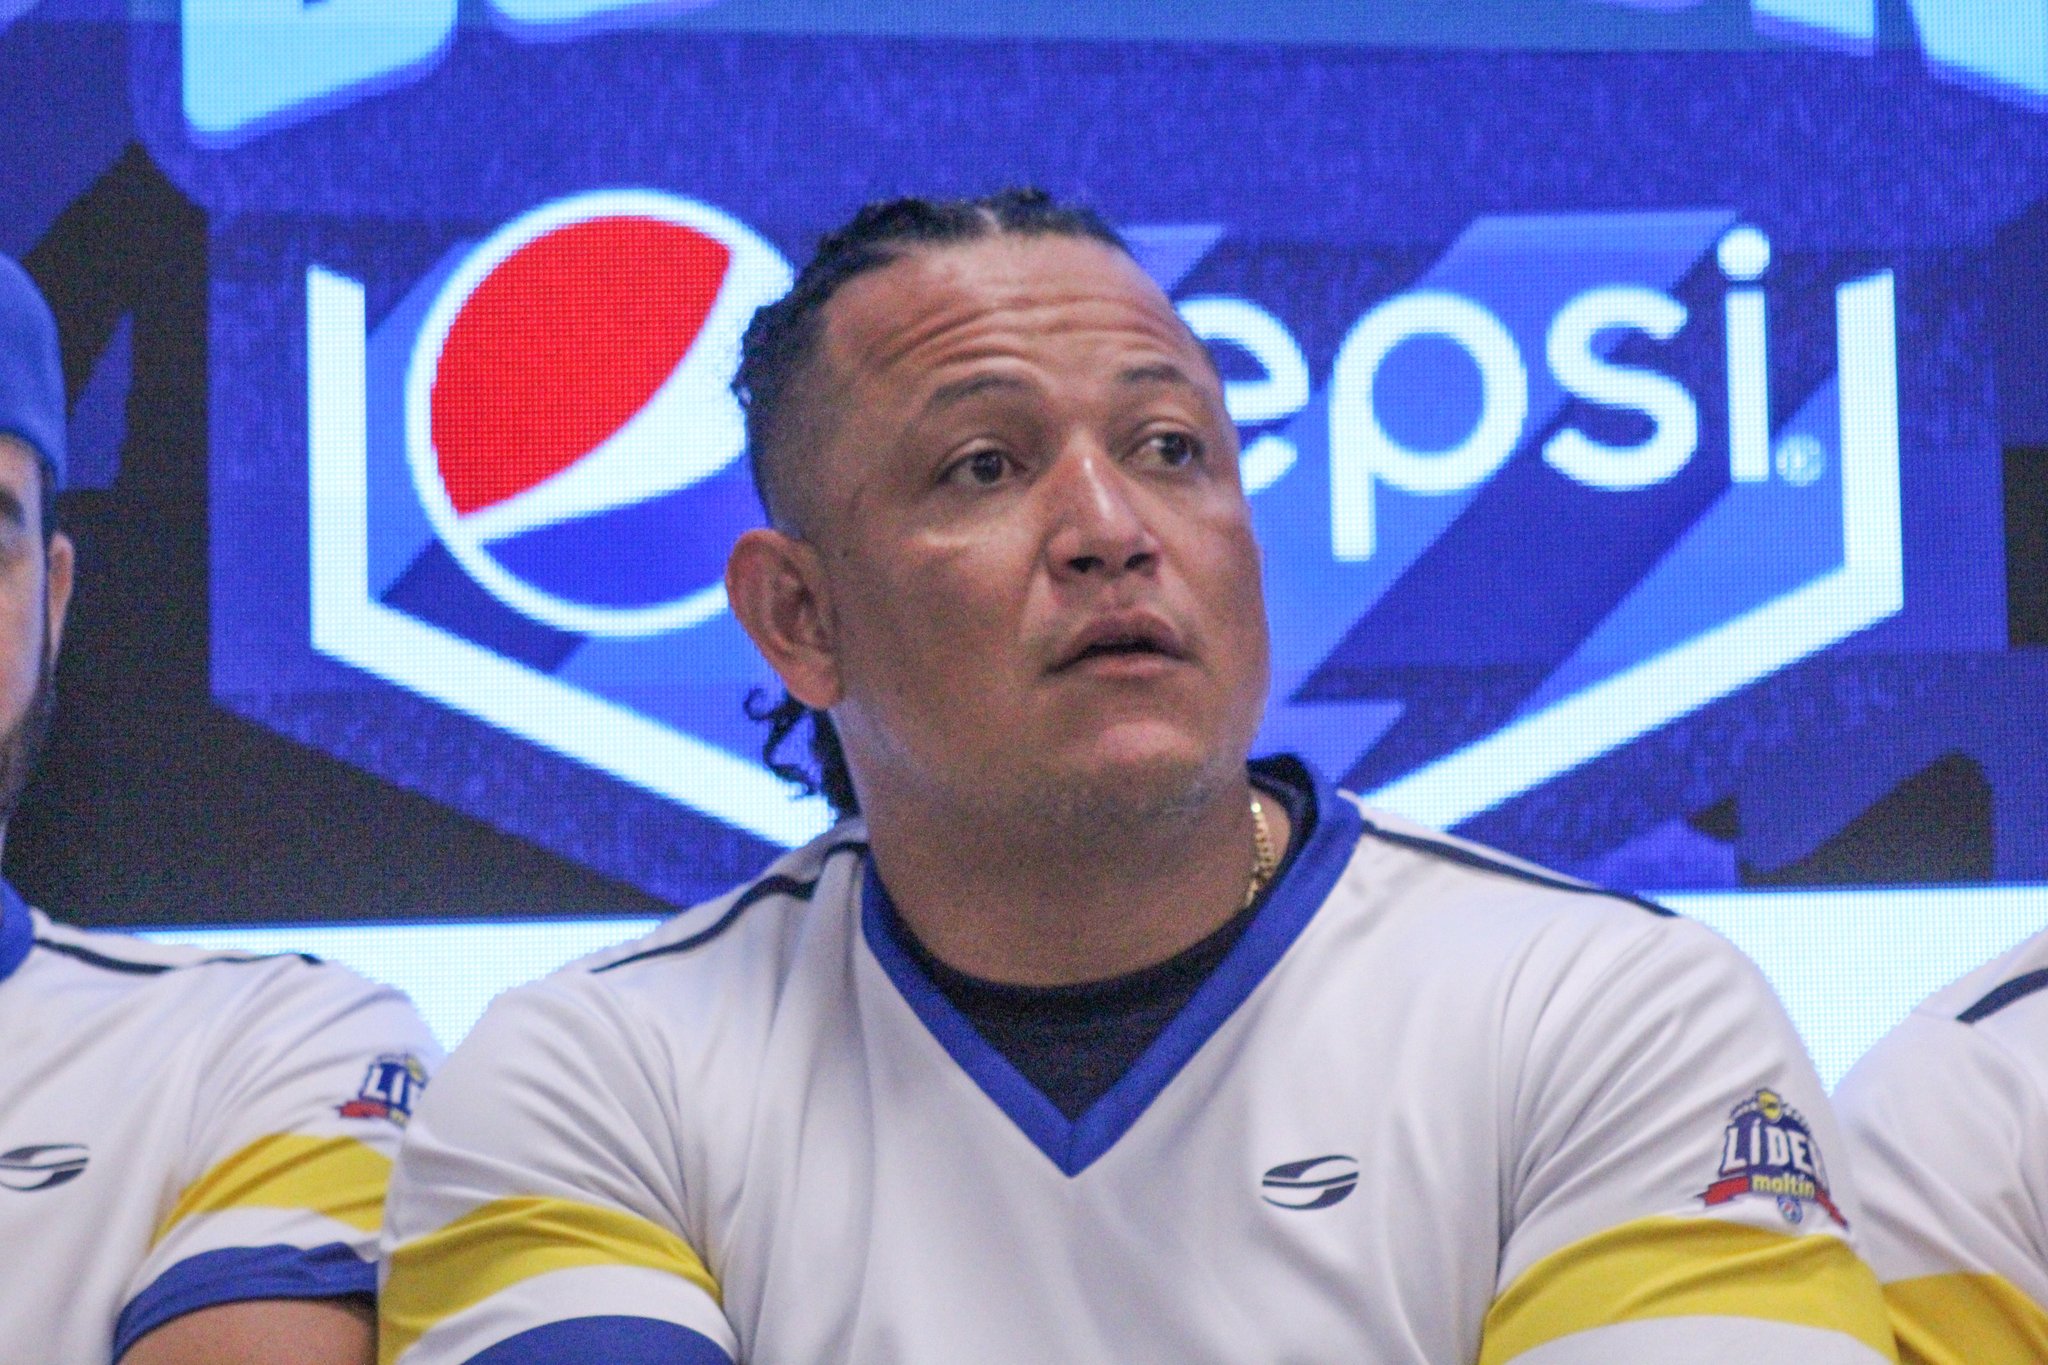 Miguel Cabrera confiesa haber sido fan de los Leones del Caracas (Video)